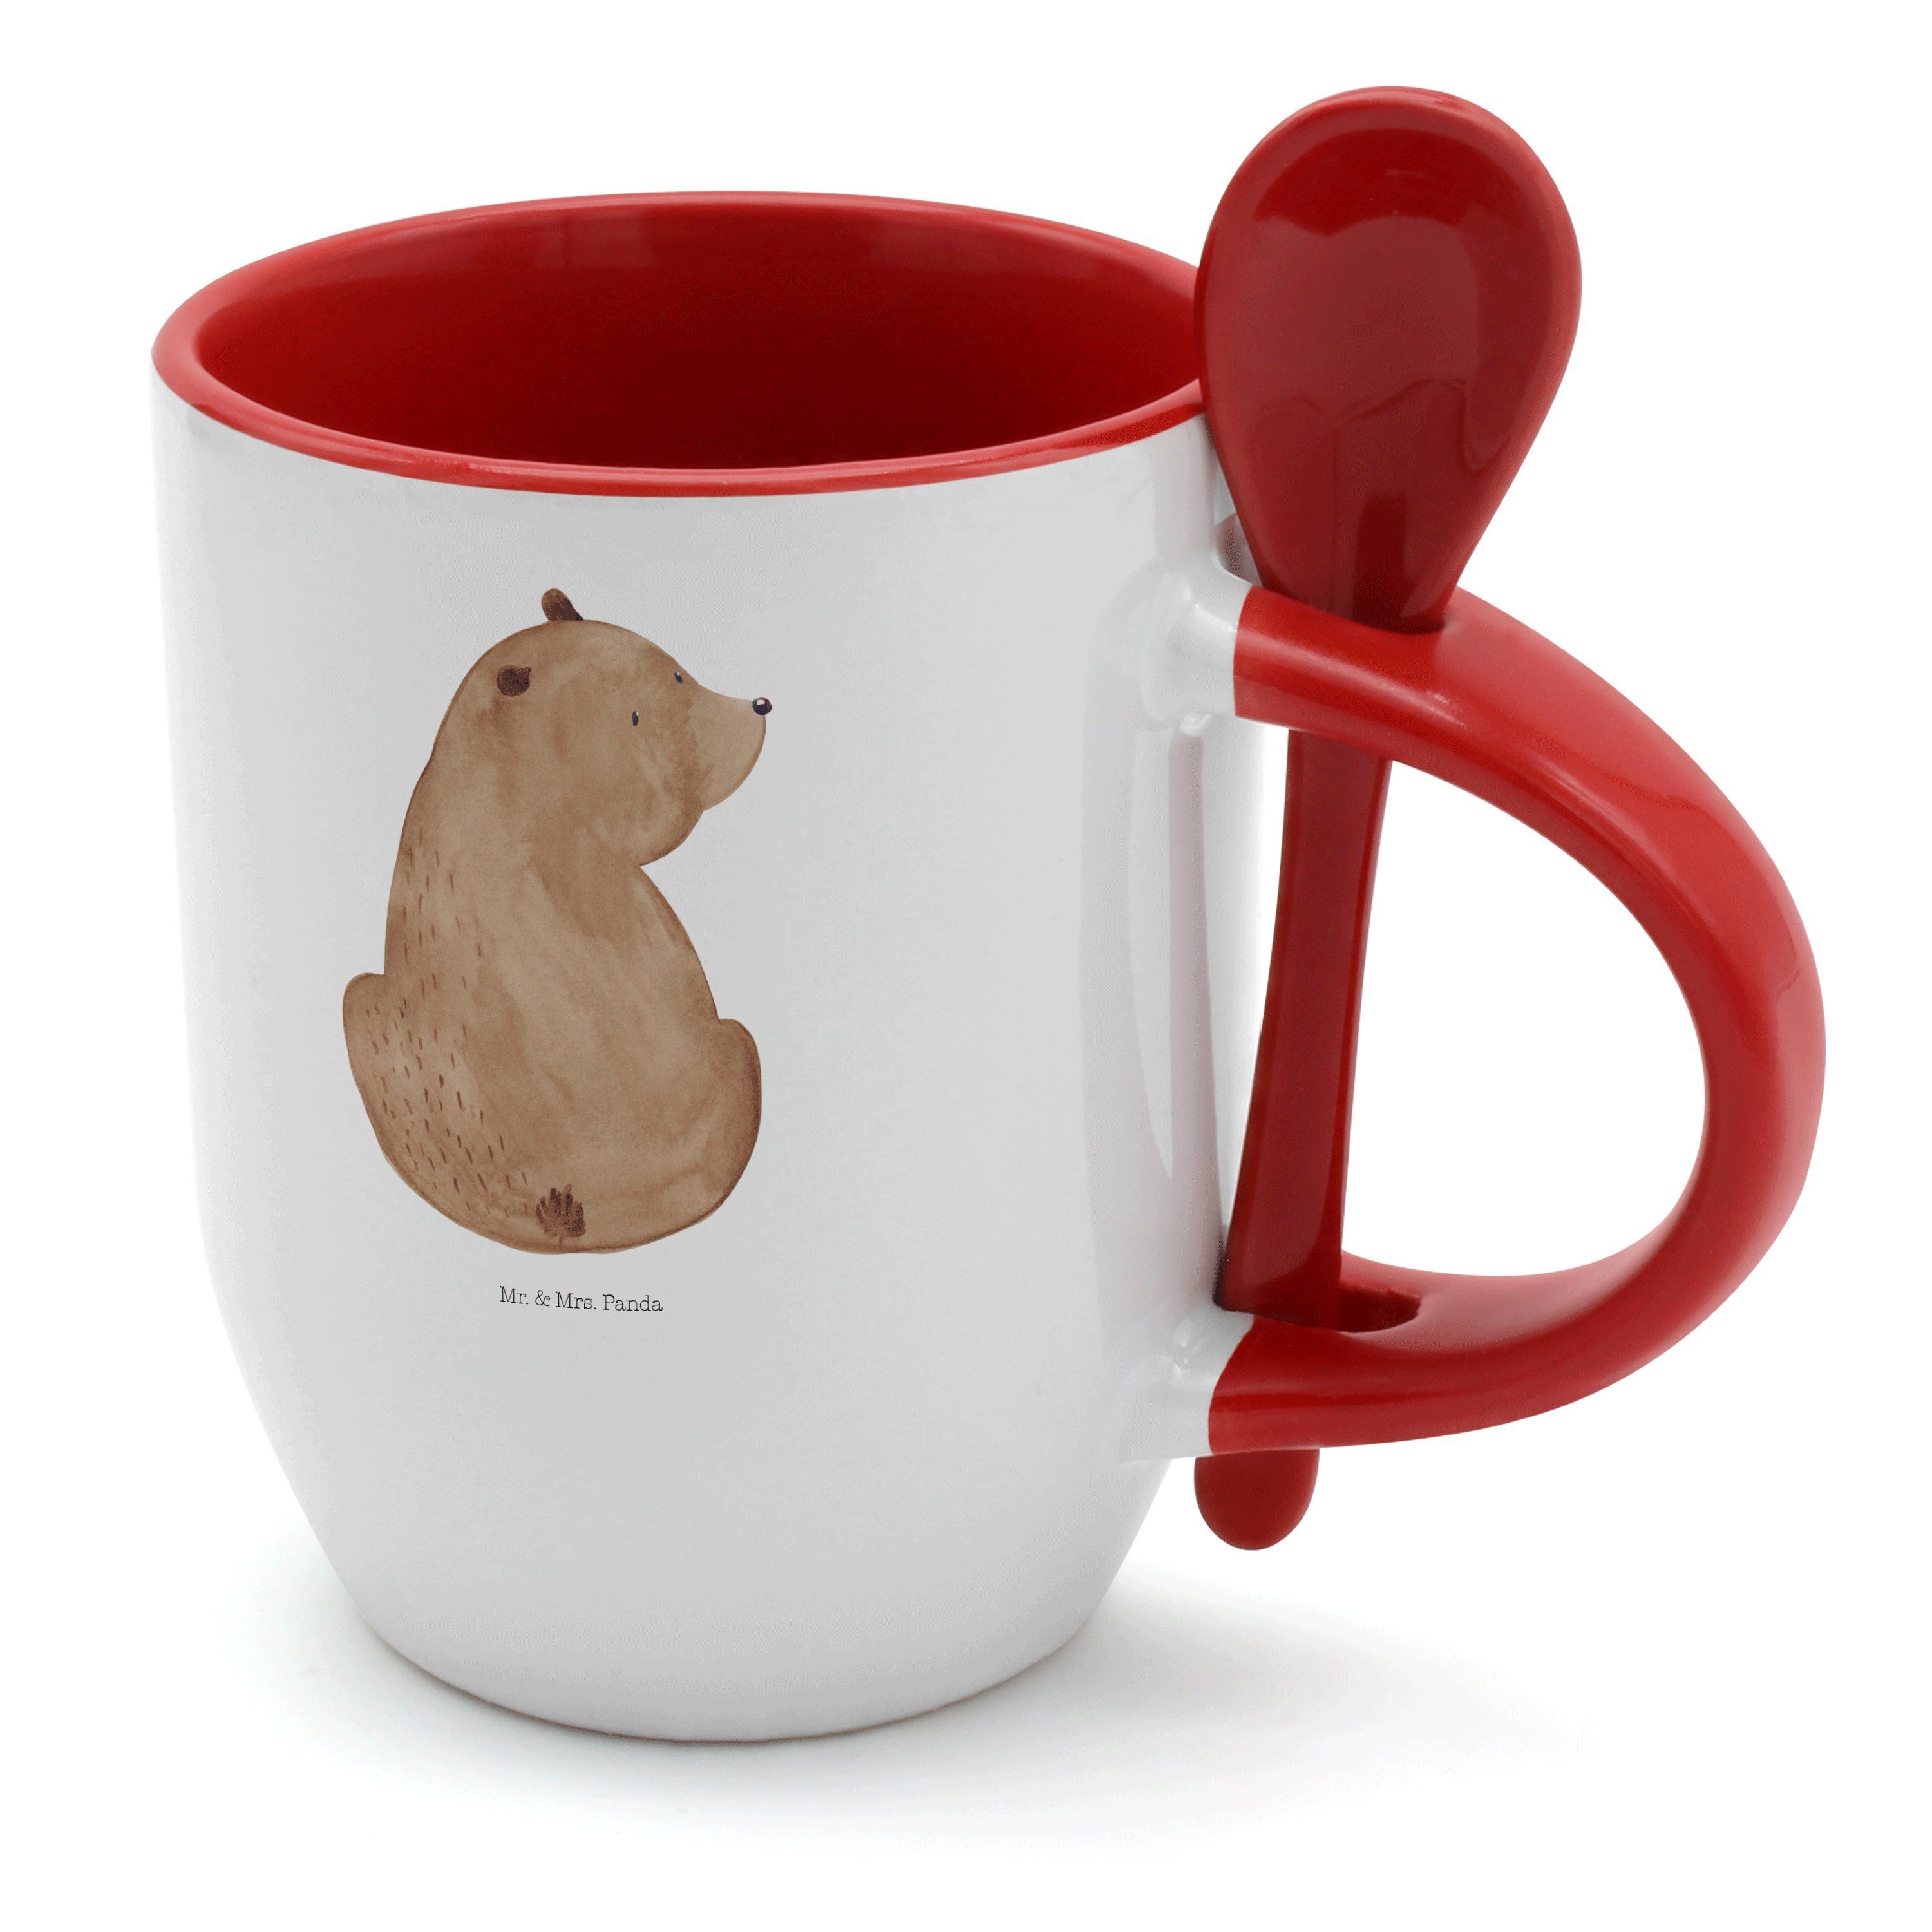 Teddybär, Mr. - Tasse mit Bär & Mrs. Panda Keramik Weiß Tasse Löffel, Geschenk, Weis, Schulterblick -